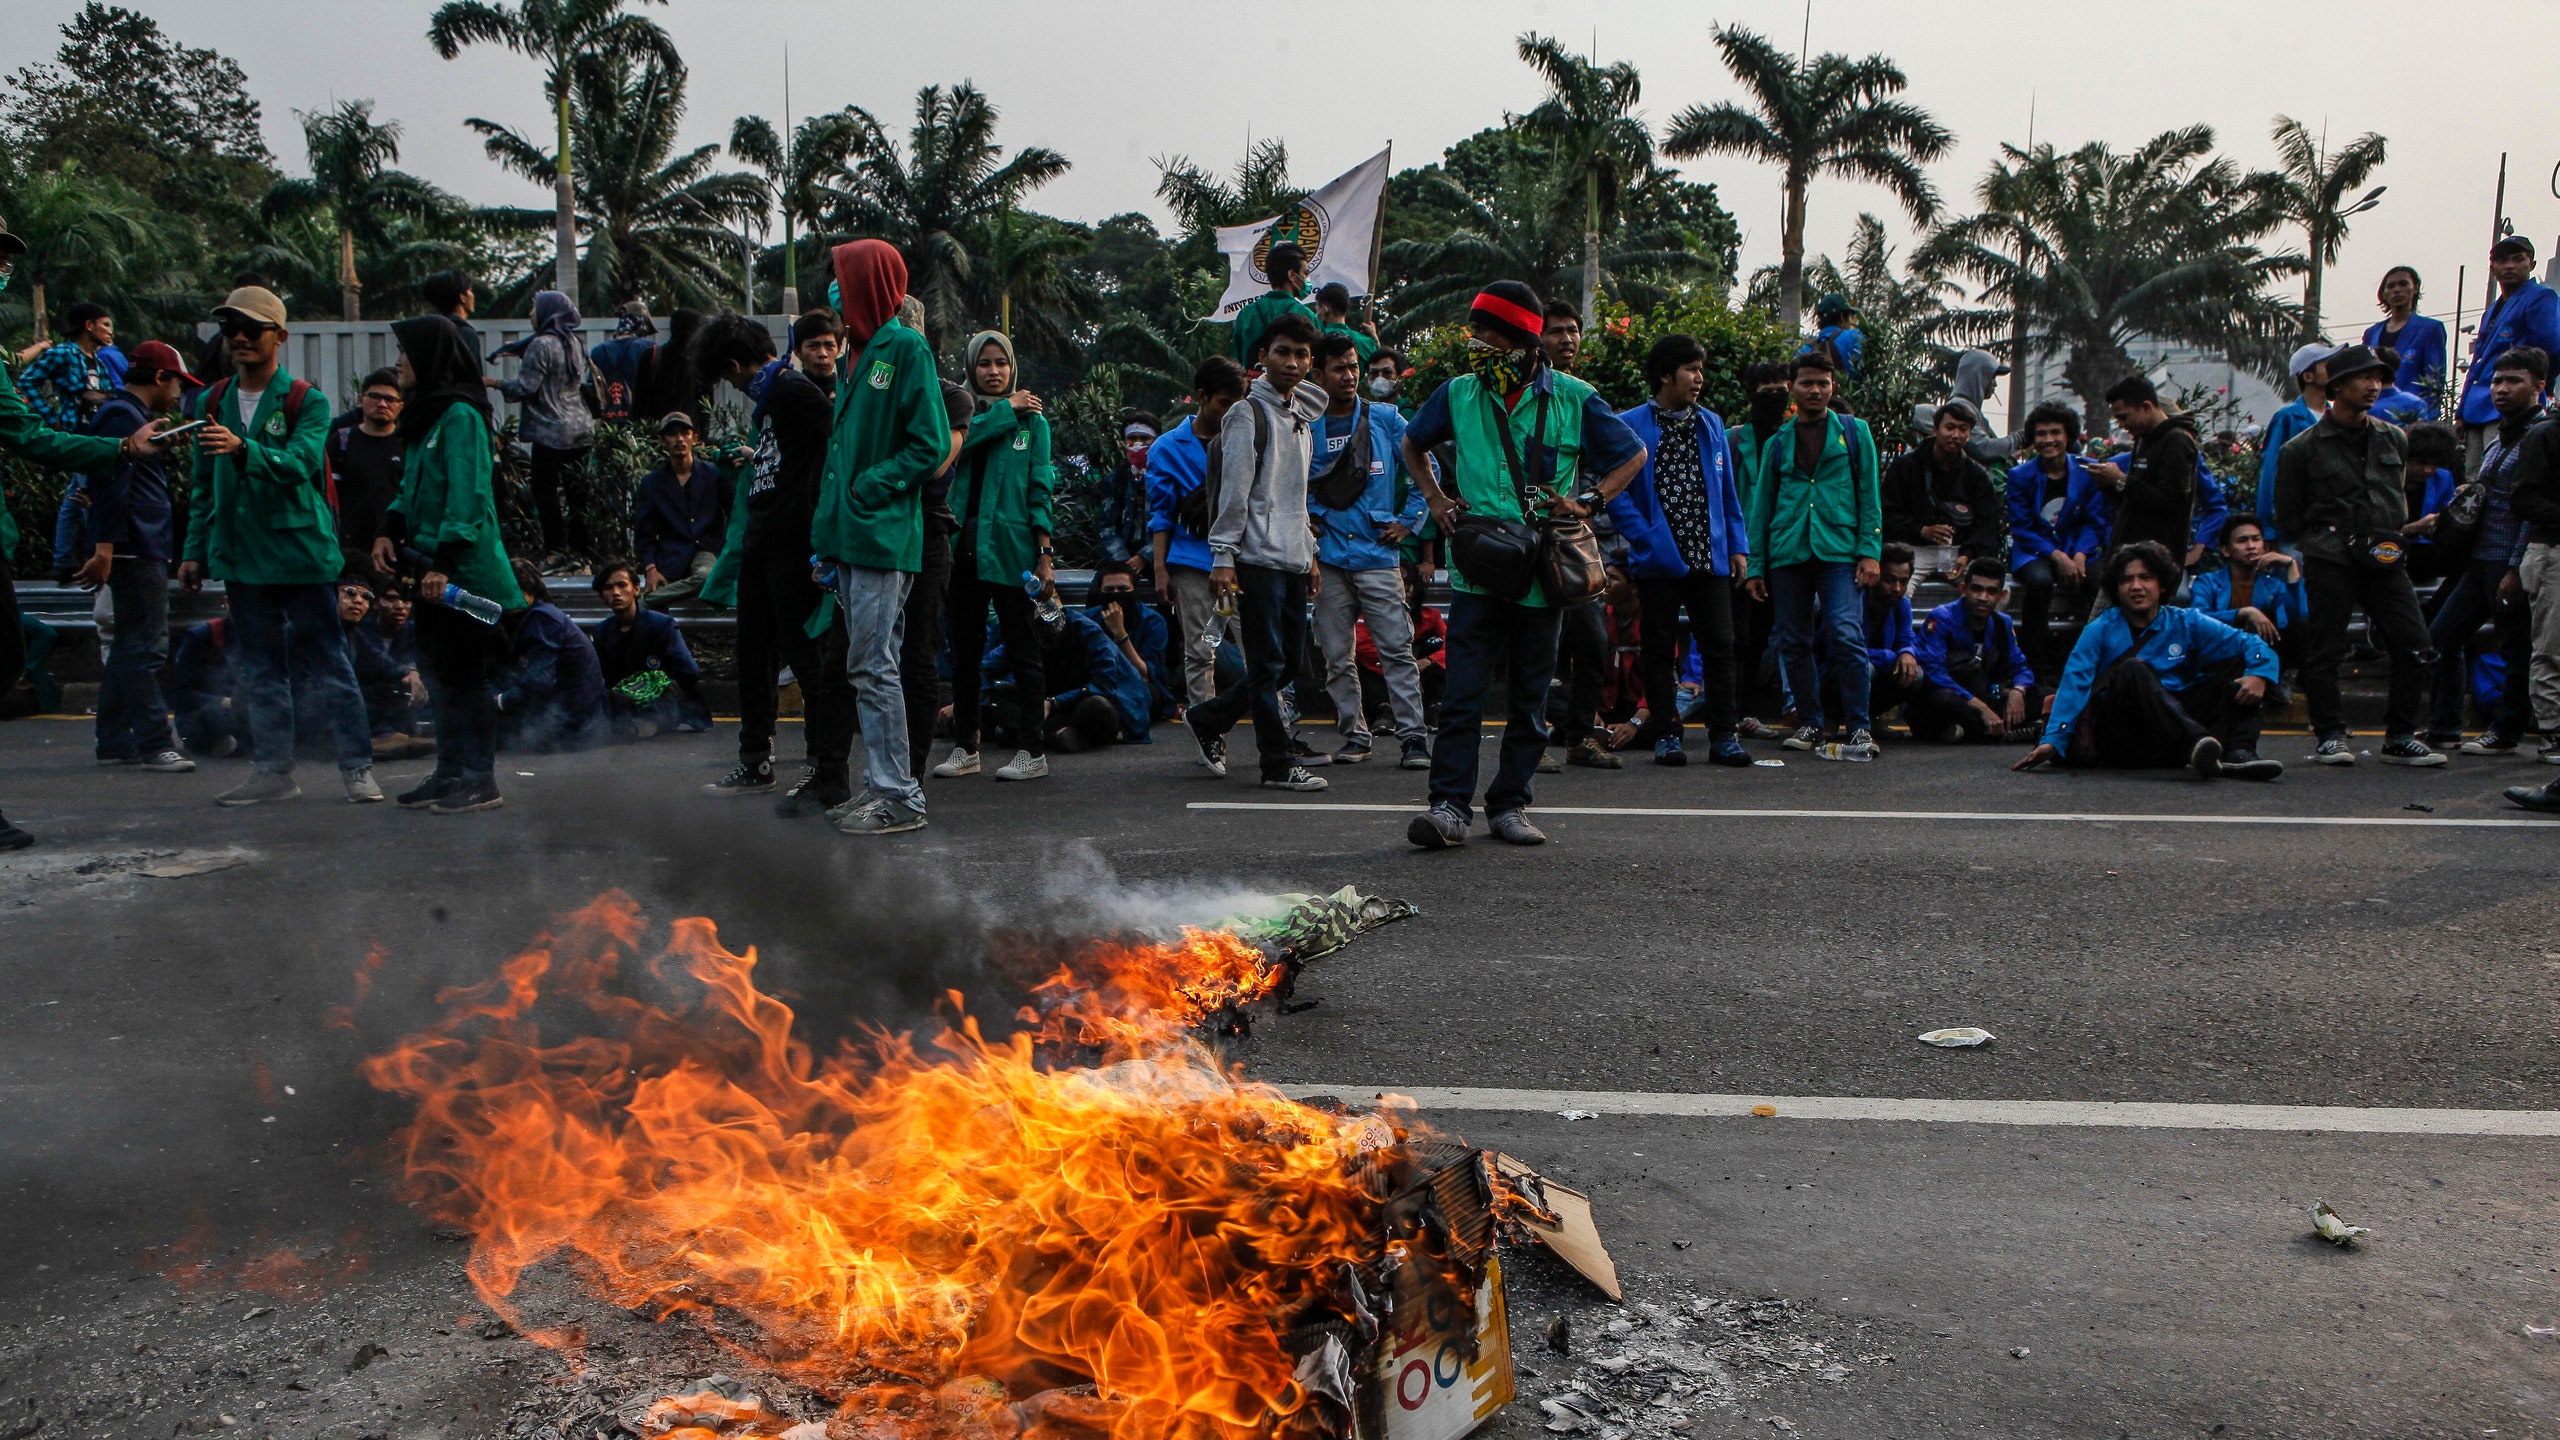 Уголовное наказание за секс до брака, аборты и богохульство: чем вызваны  протесты в Индонезии | Glamour